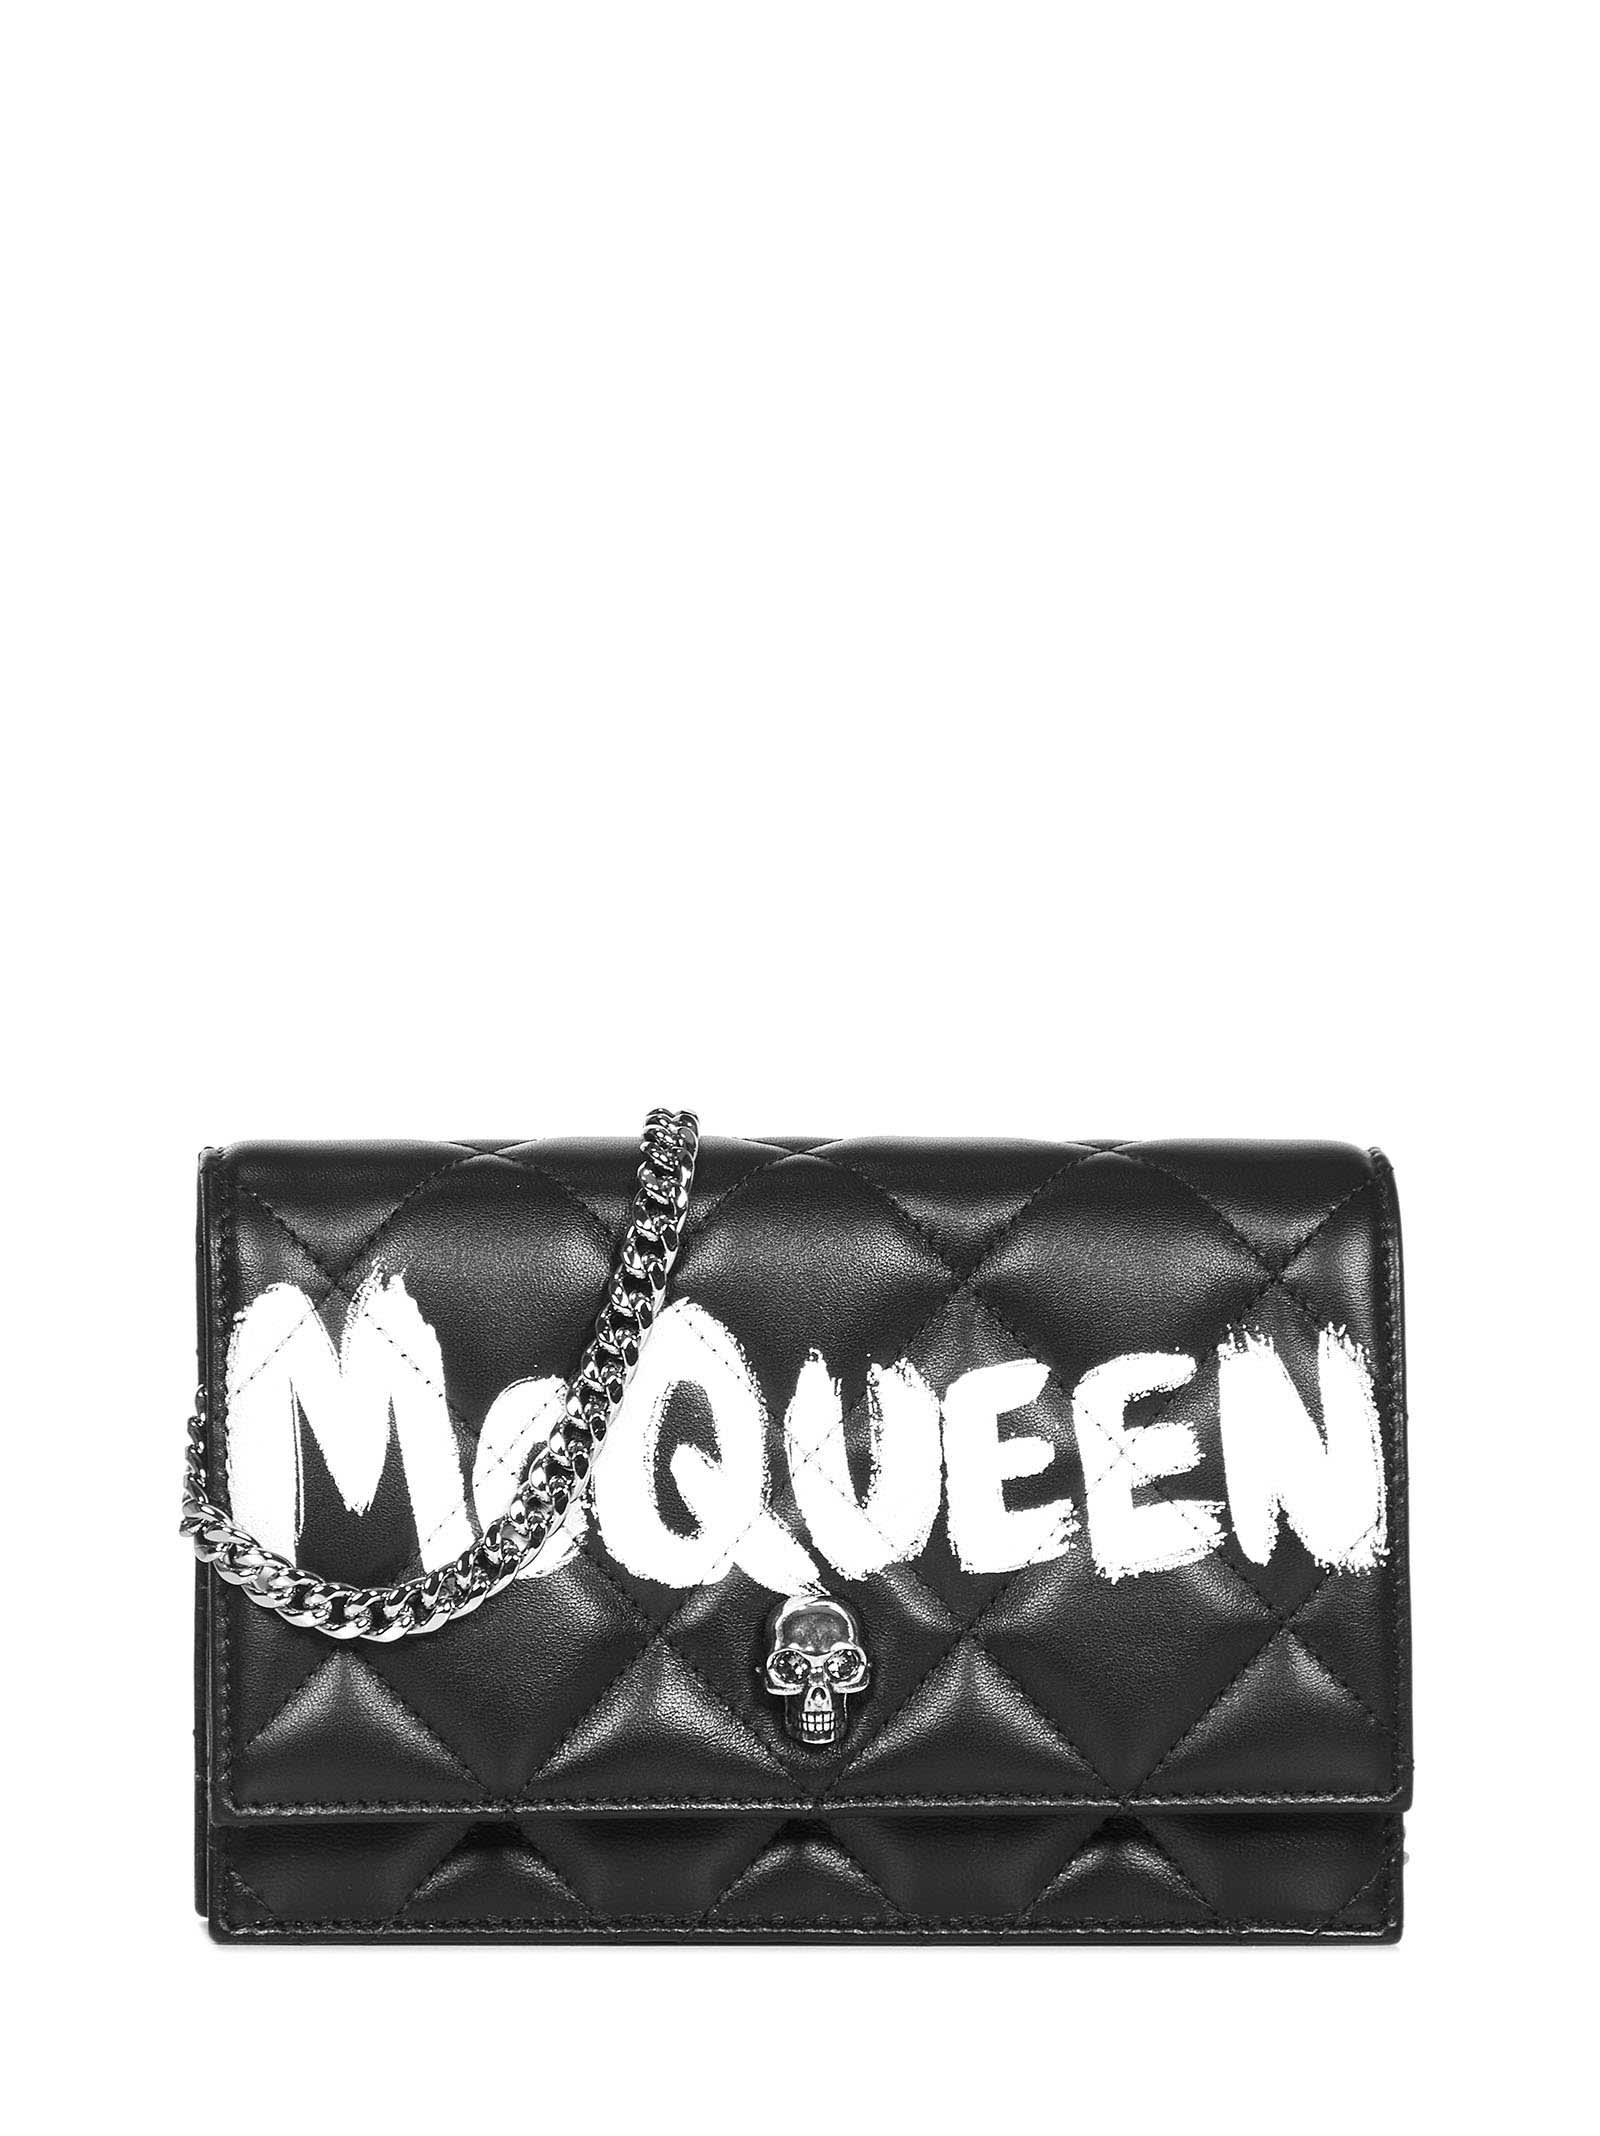 Alexander McQueen Skull Small Shoulder Bag